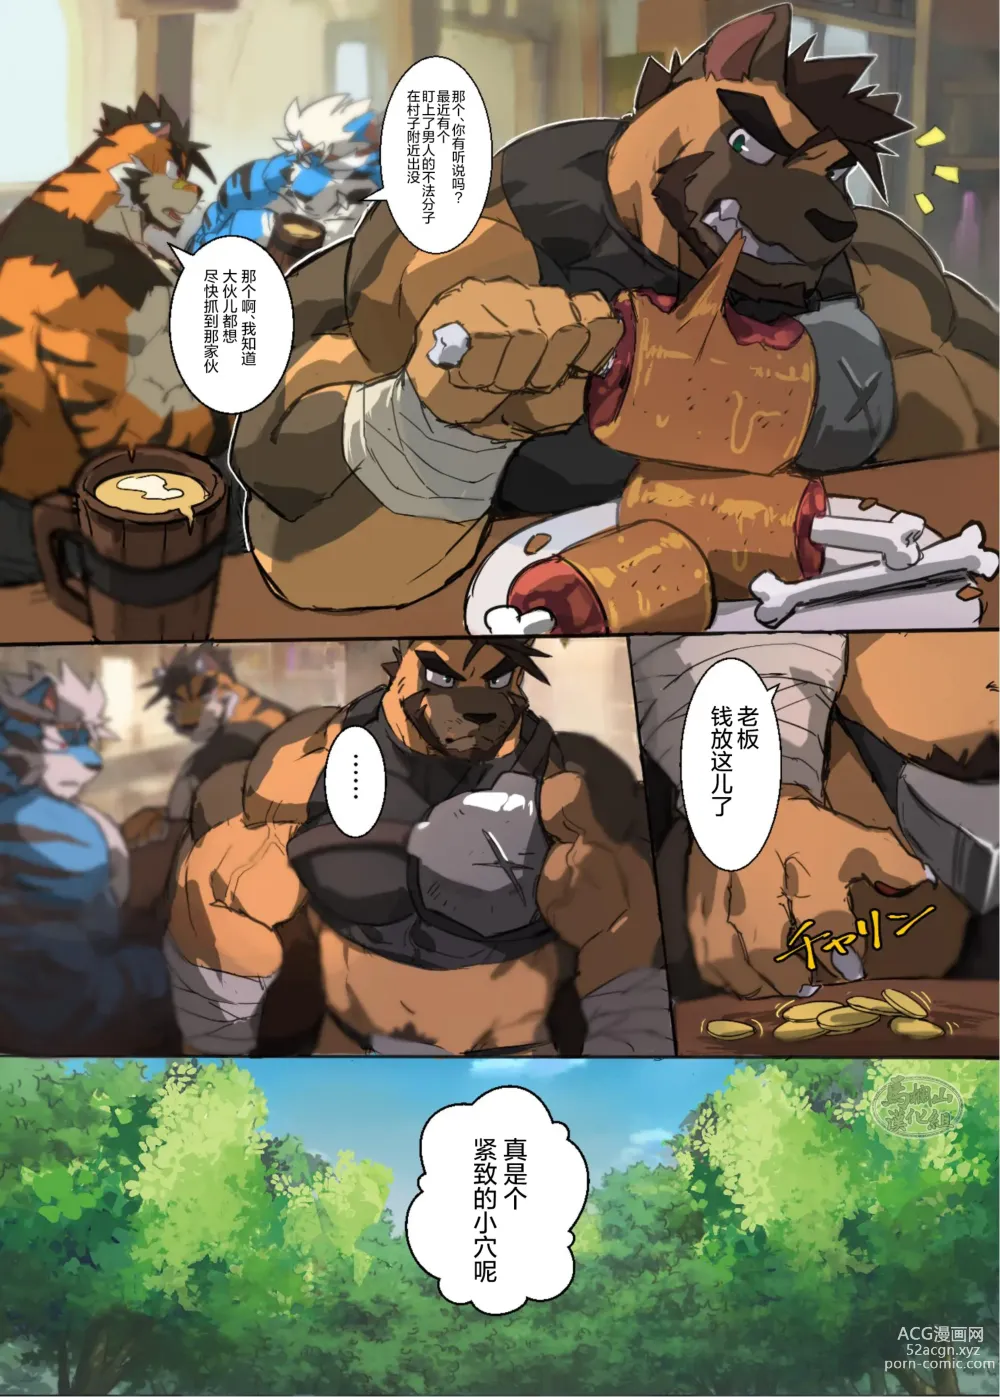 Page 5 of doujinshi Yuujuu Fudan Bangaigou featuring AshenDawger